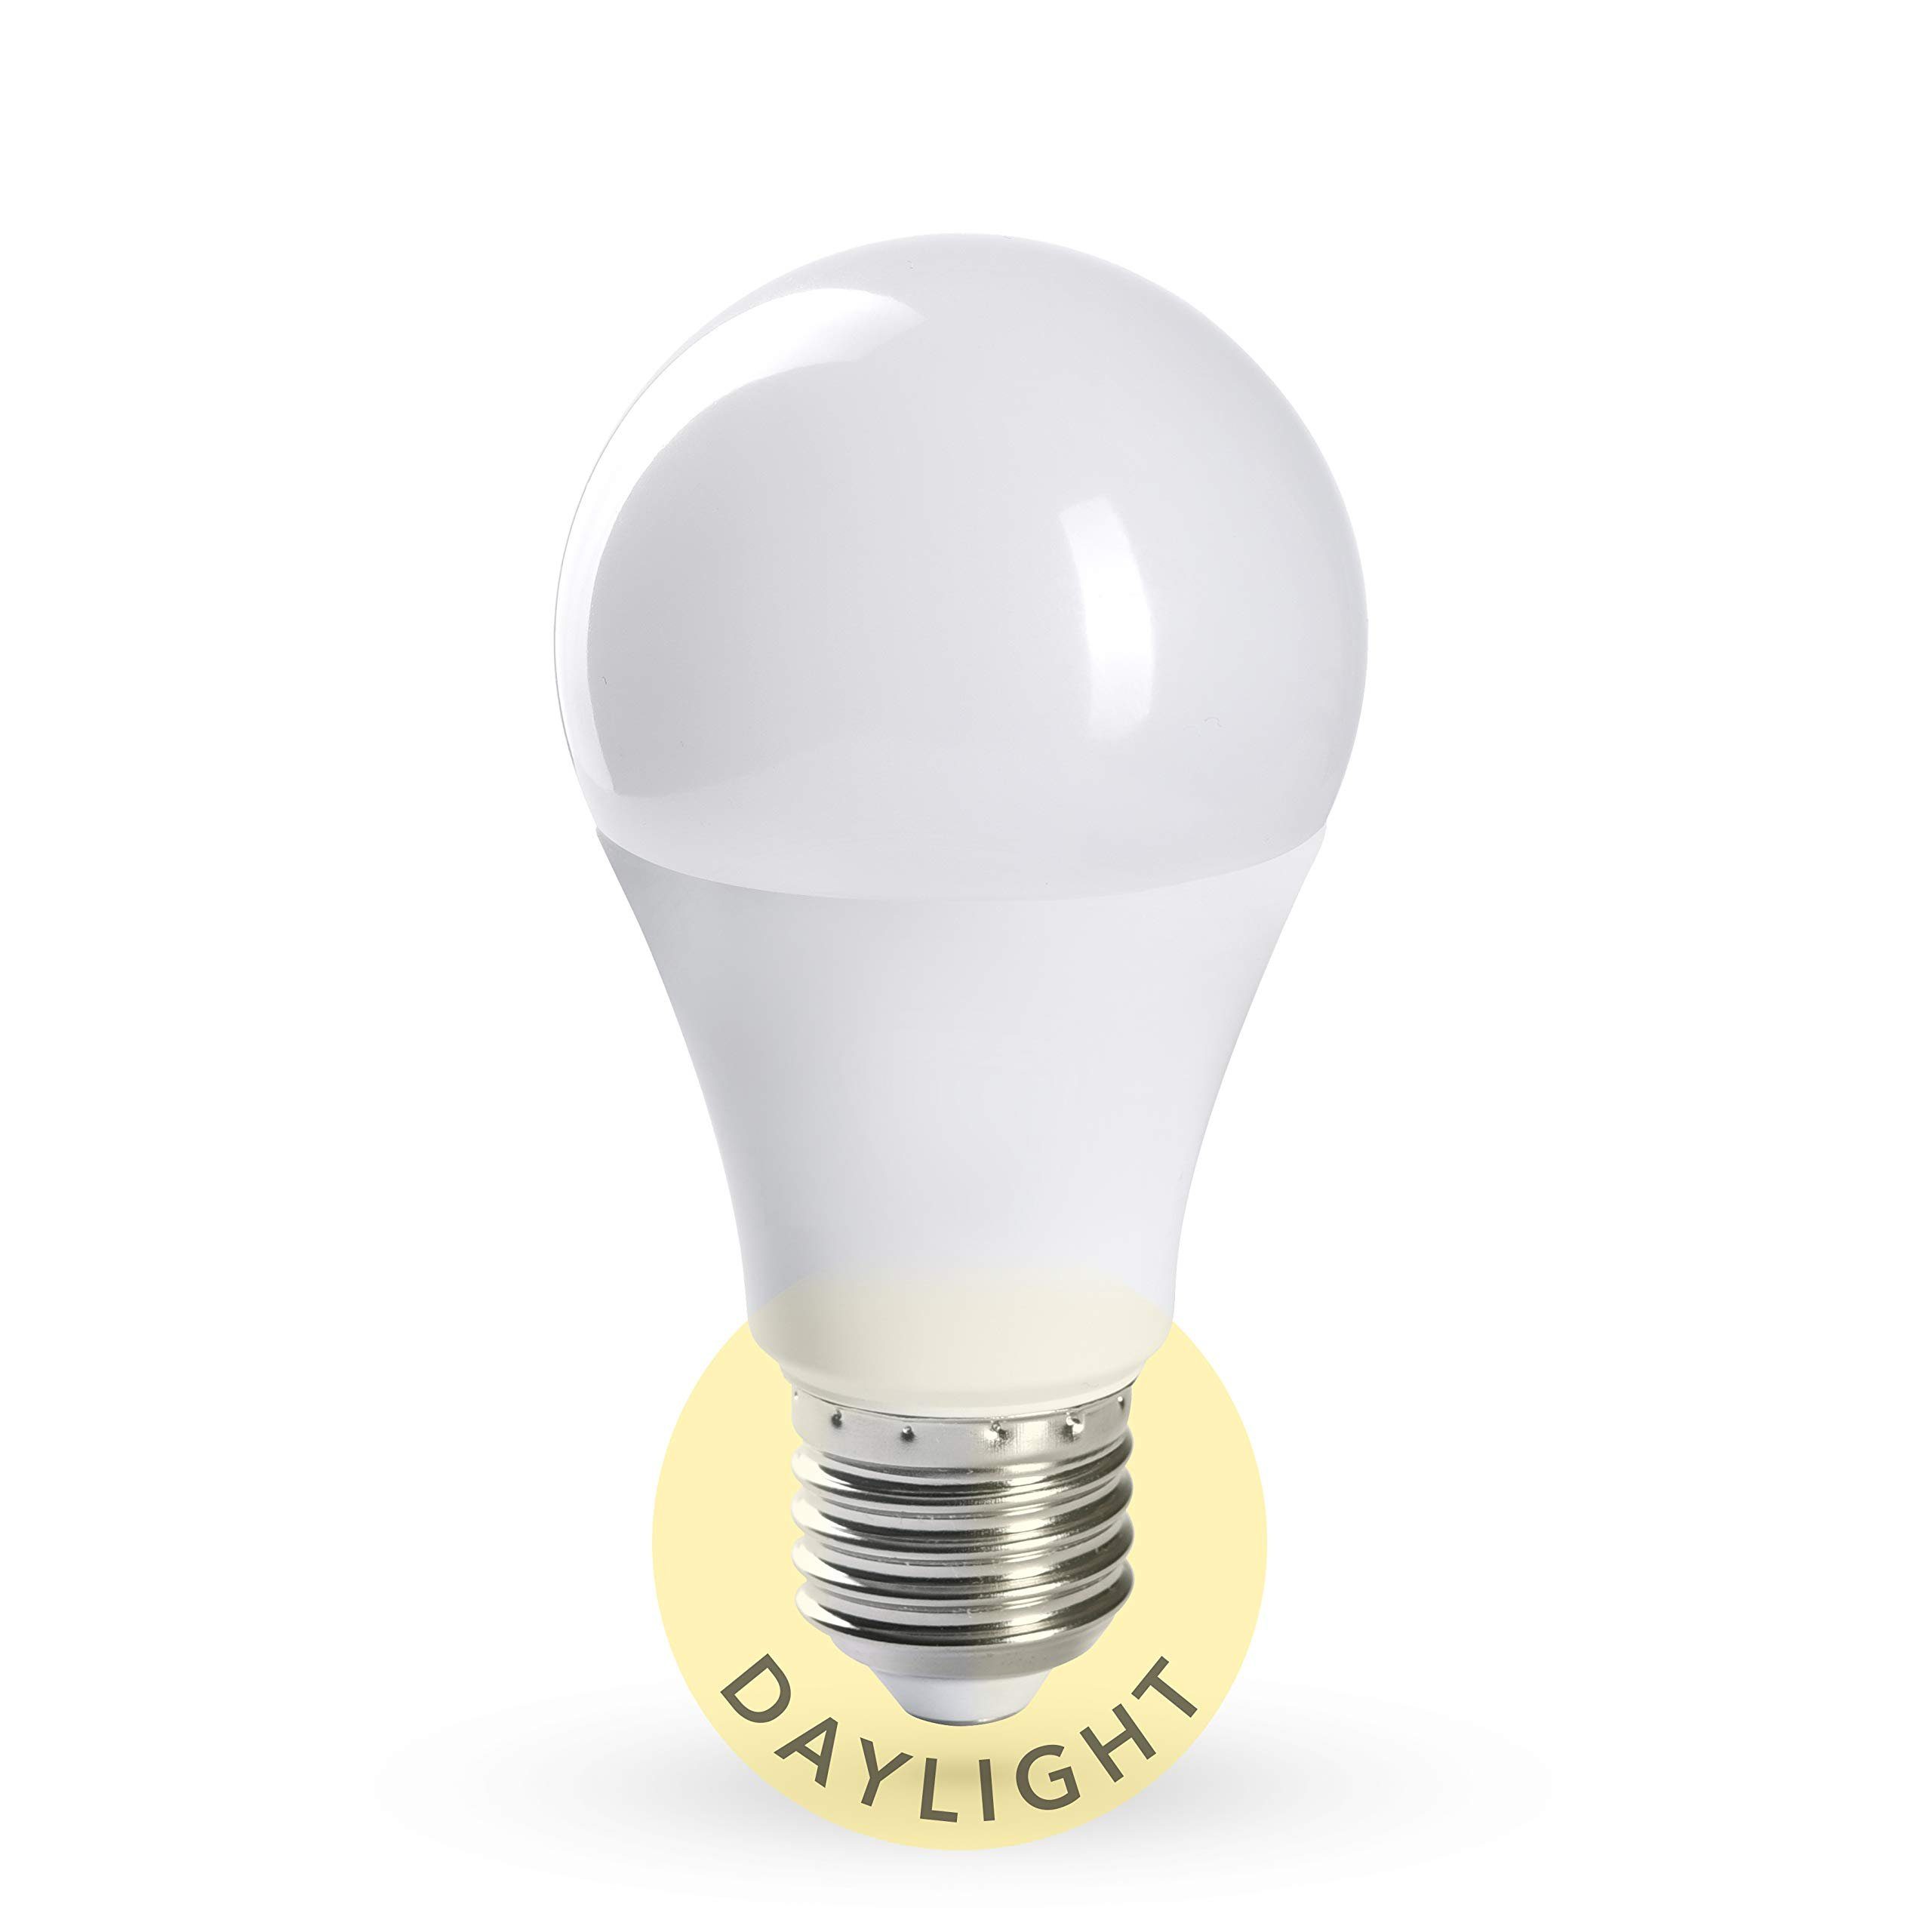 Crown LED Tageslicht Glühbirne Vollspektrum, Dimmbar, 10.000 LUX, E27, 11W  Halogenlampe, Wei 1Xklassisch